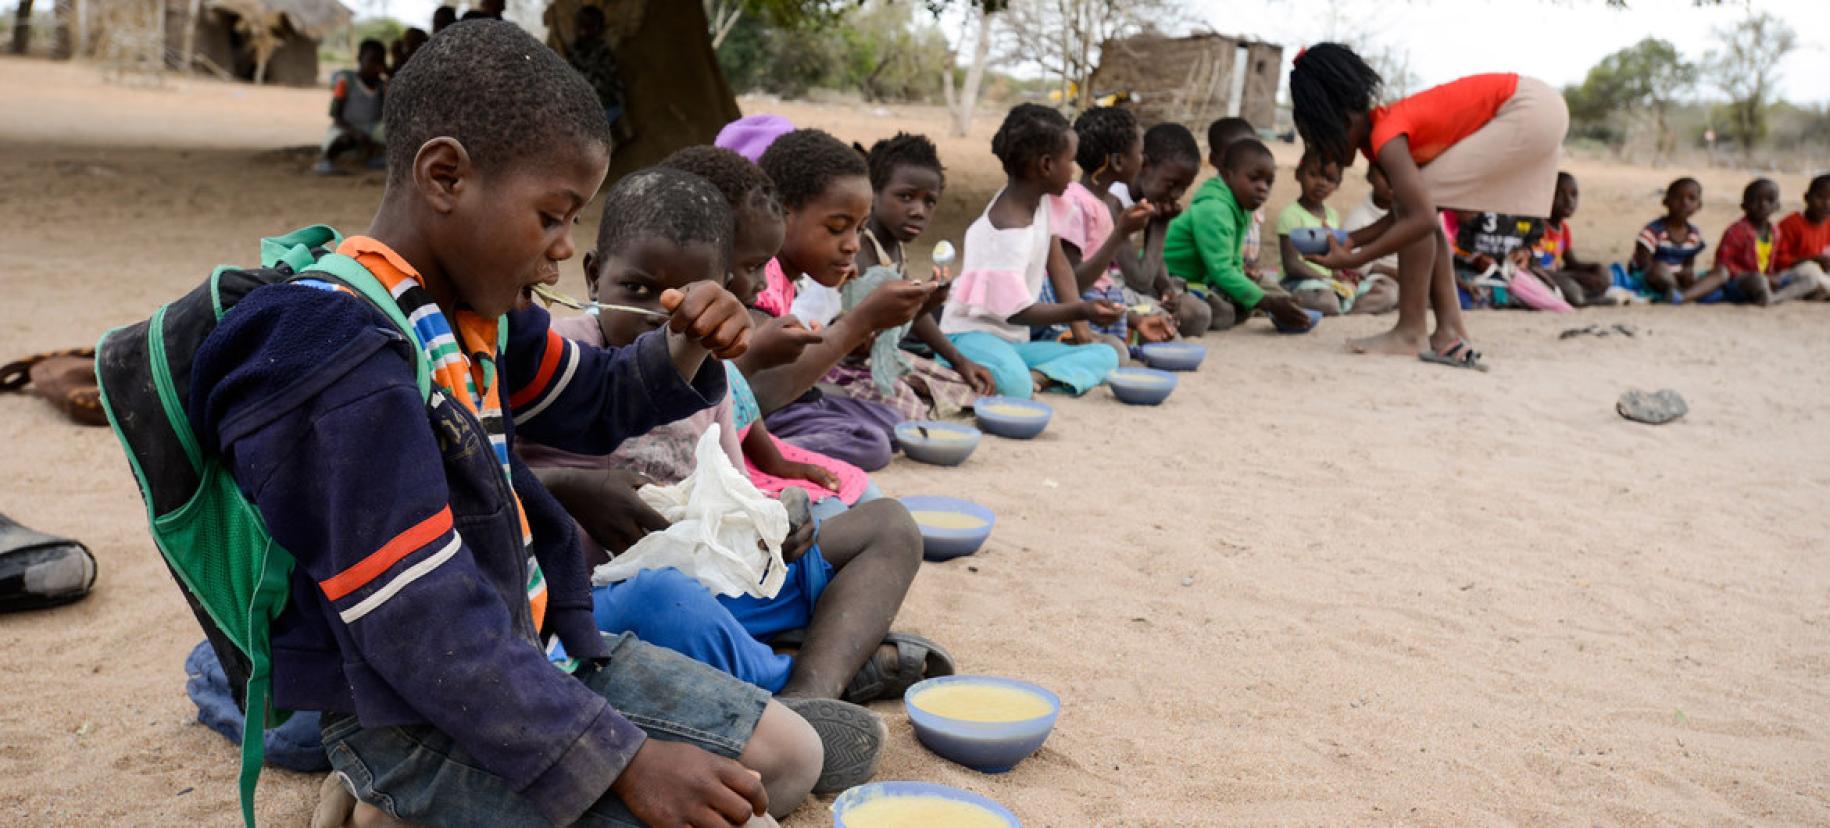 De jeunes enfants sont assis par terre, en demi-cercle, à l'extérieur et prennent un repas que leur sert une jeune fille dans des assiettes bleues.